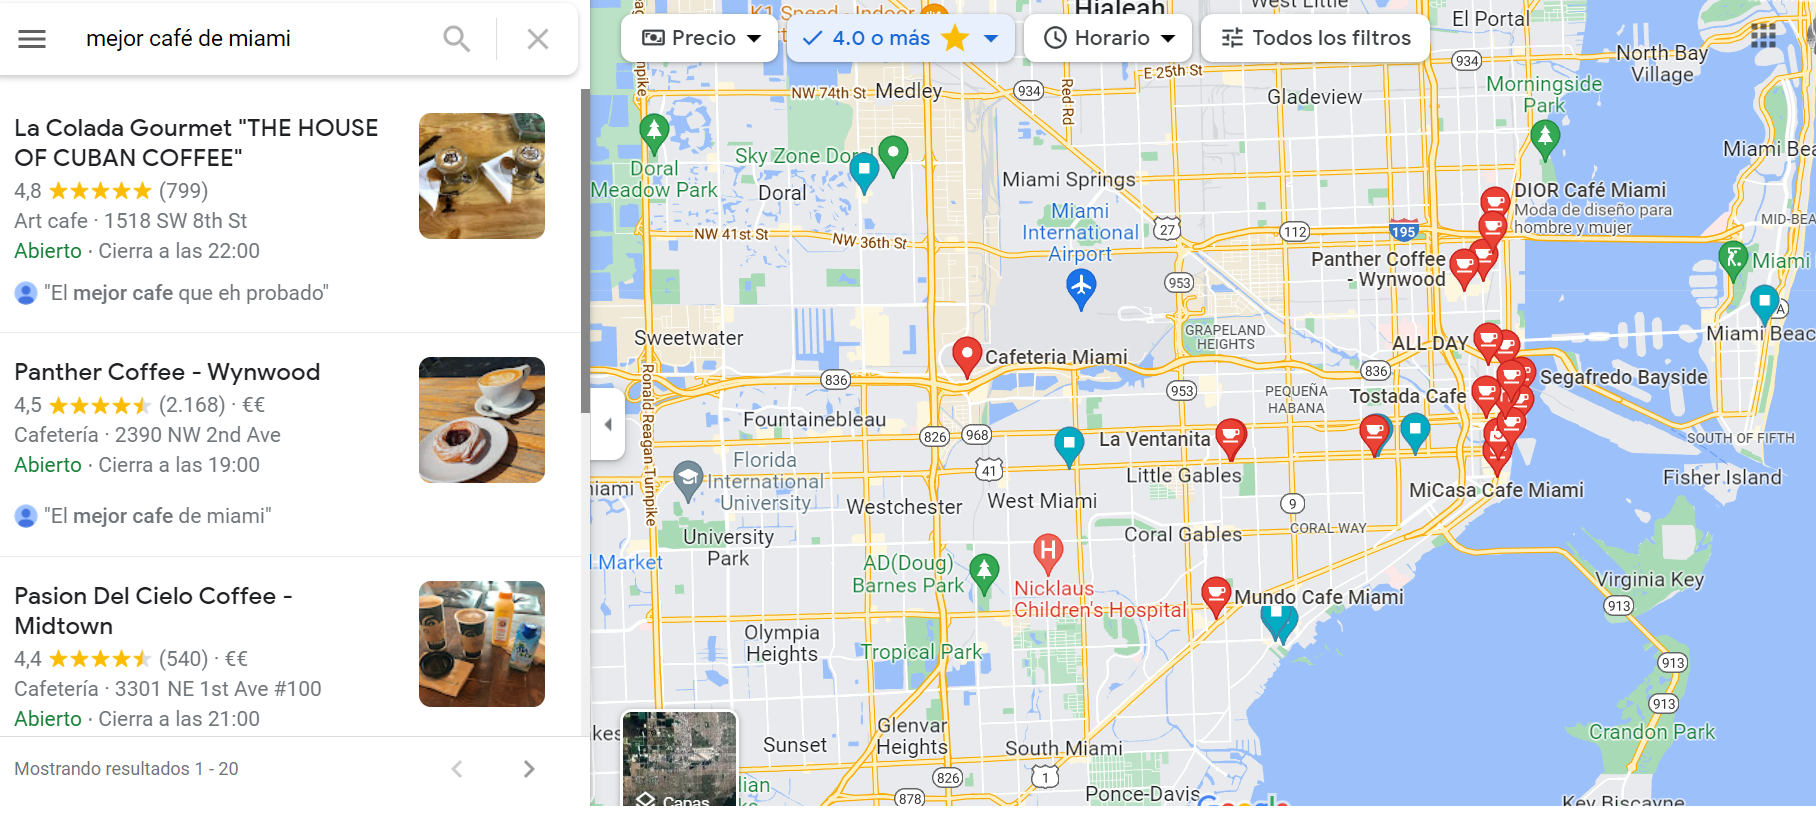 Ejemplo de resultados de busqueda local en Google